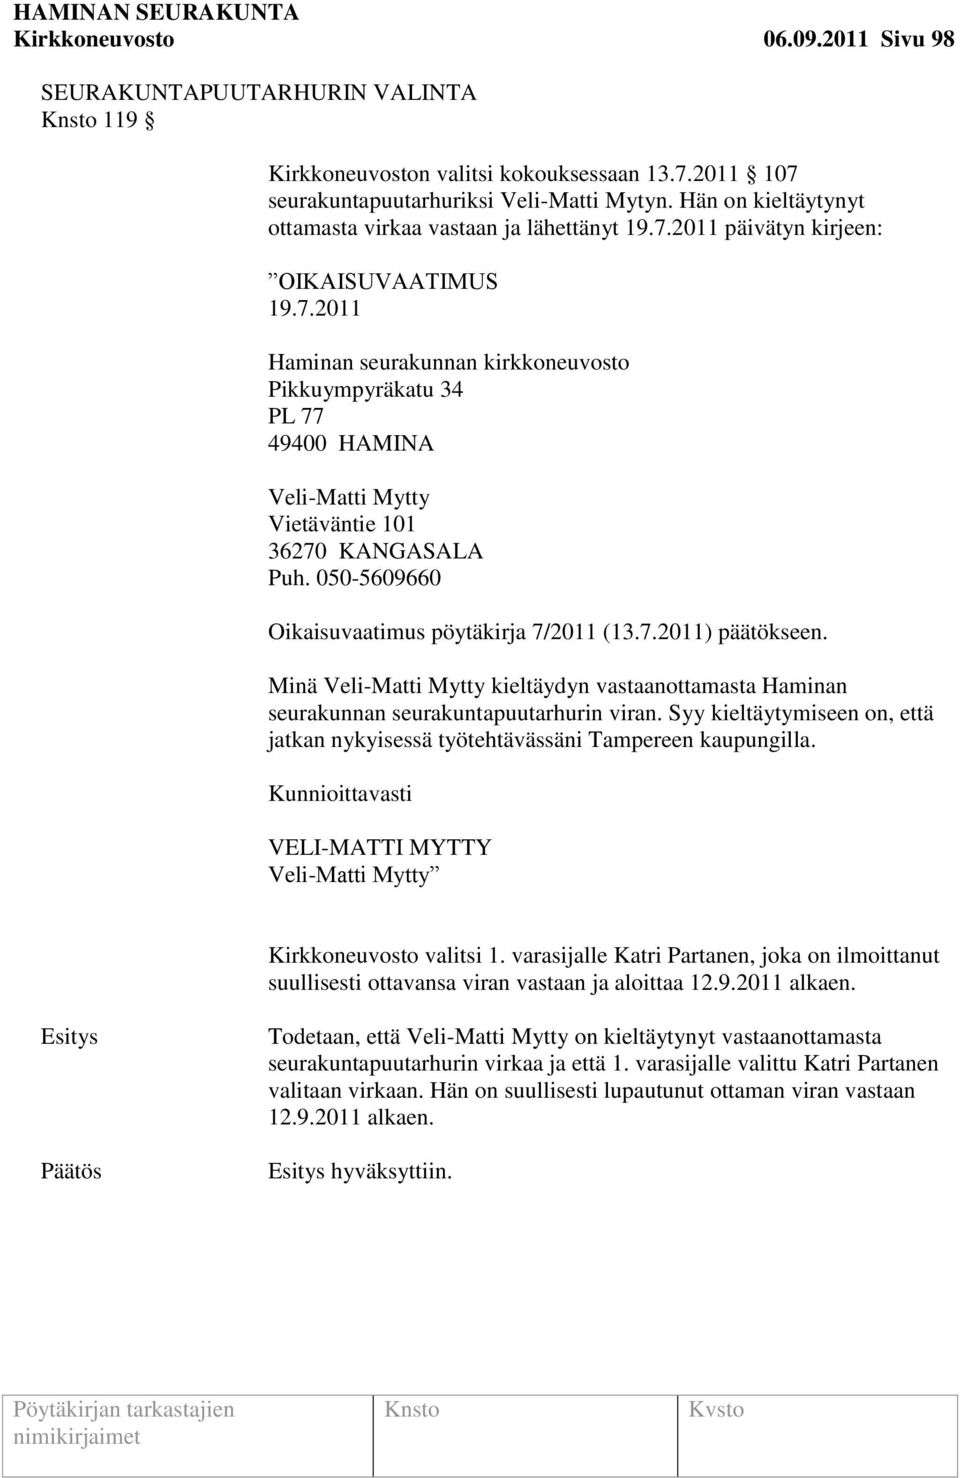 050-5609660 Oikaisuvaatimus pöytäkirja 7/2011 (13.7.2011) päätökseen. Minä Veli-Matti Mytty kieltäydyn vastaanottamasta Haminan seurakunnan seurakuntapuutarhurin viran.